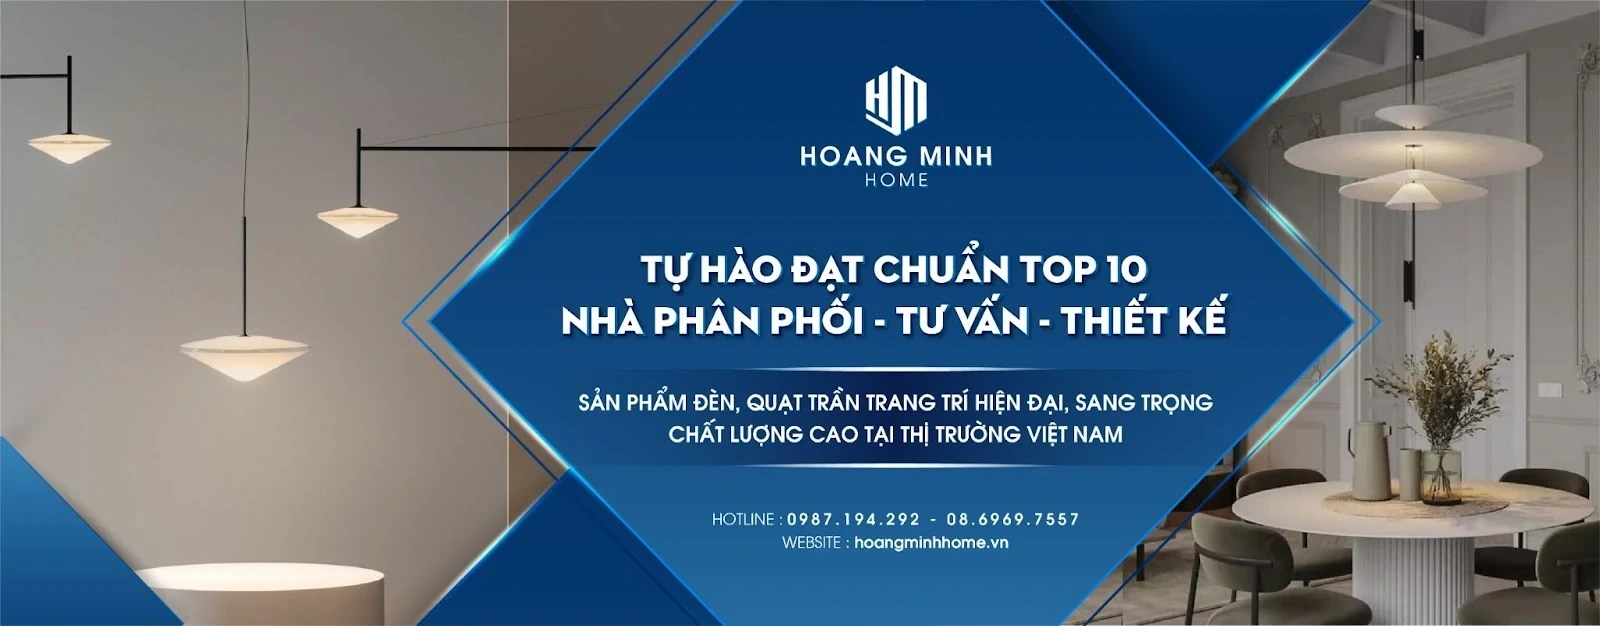 Hoàng Minh Home - nơi phân phối đồ nội thất chính hãng uy tín trên thị trường